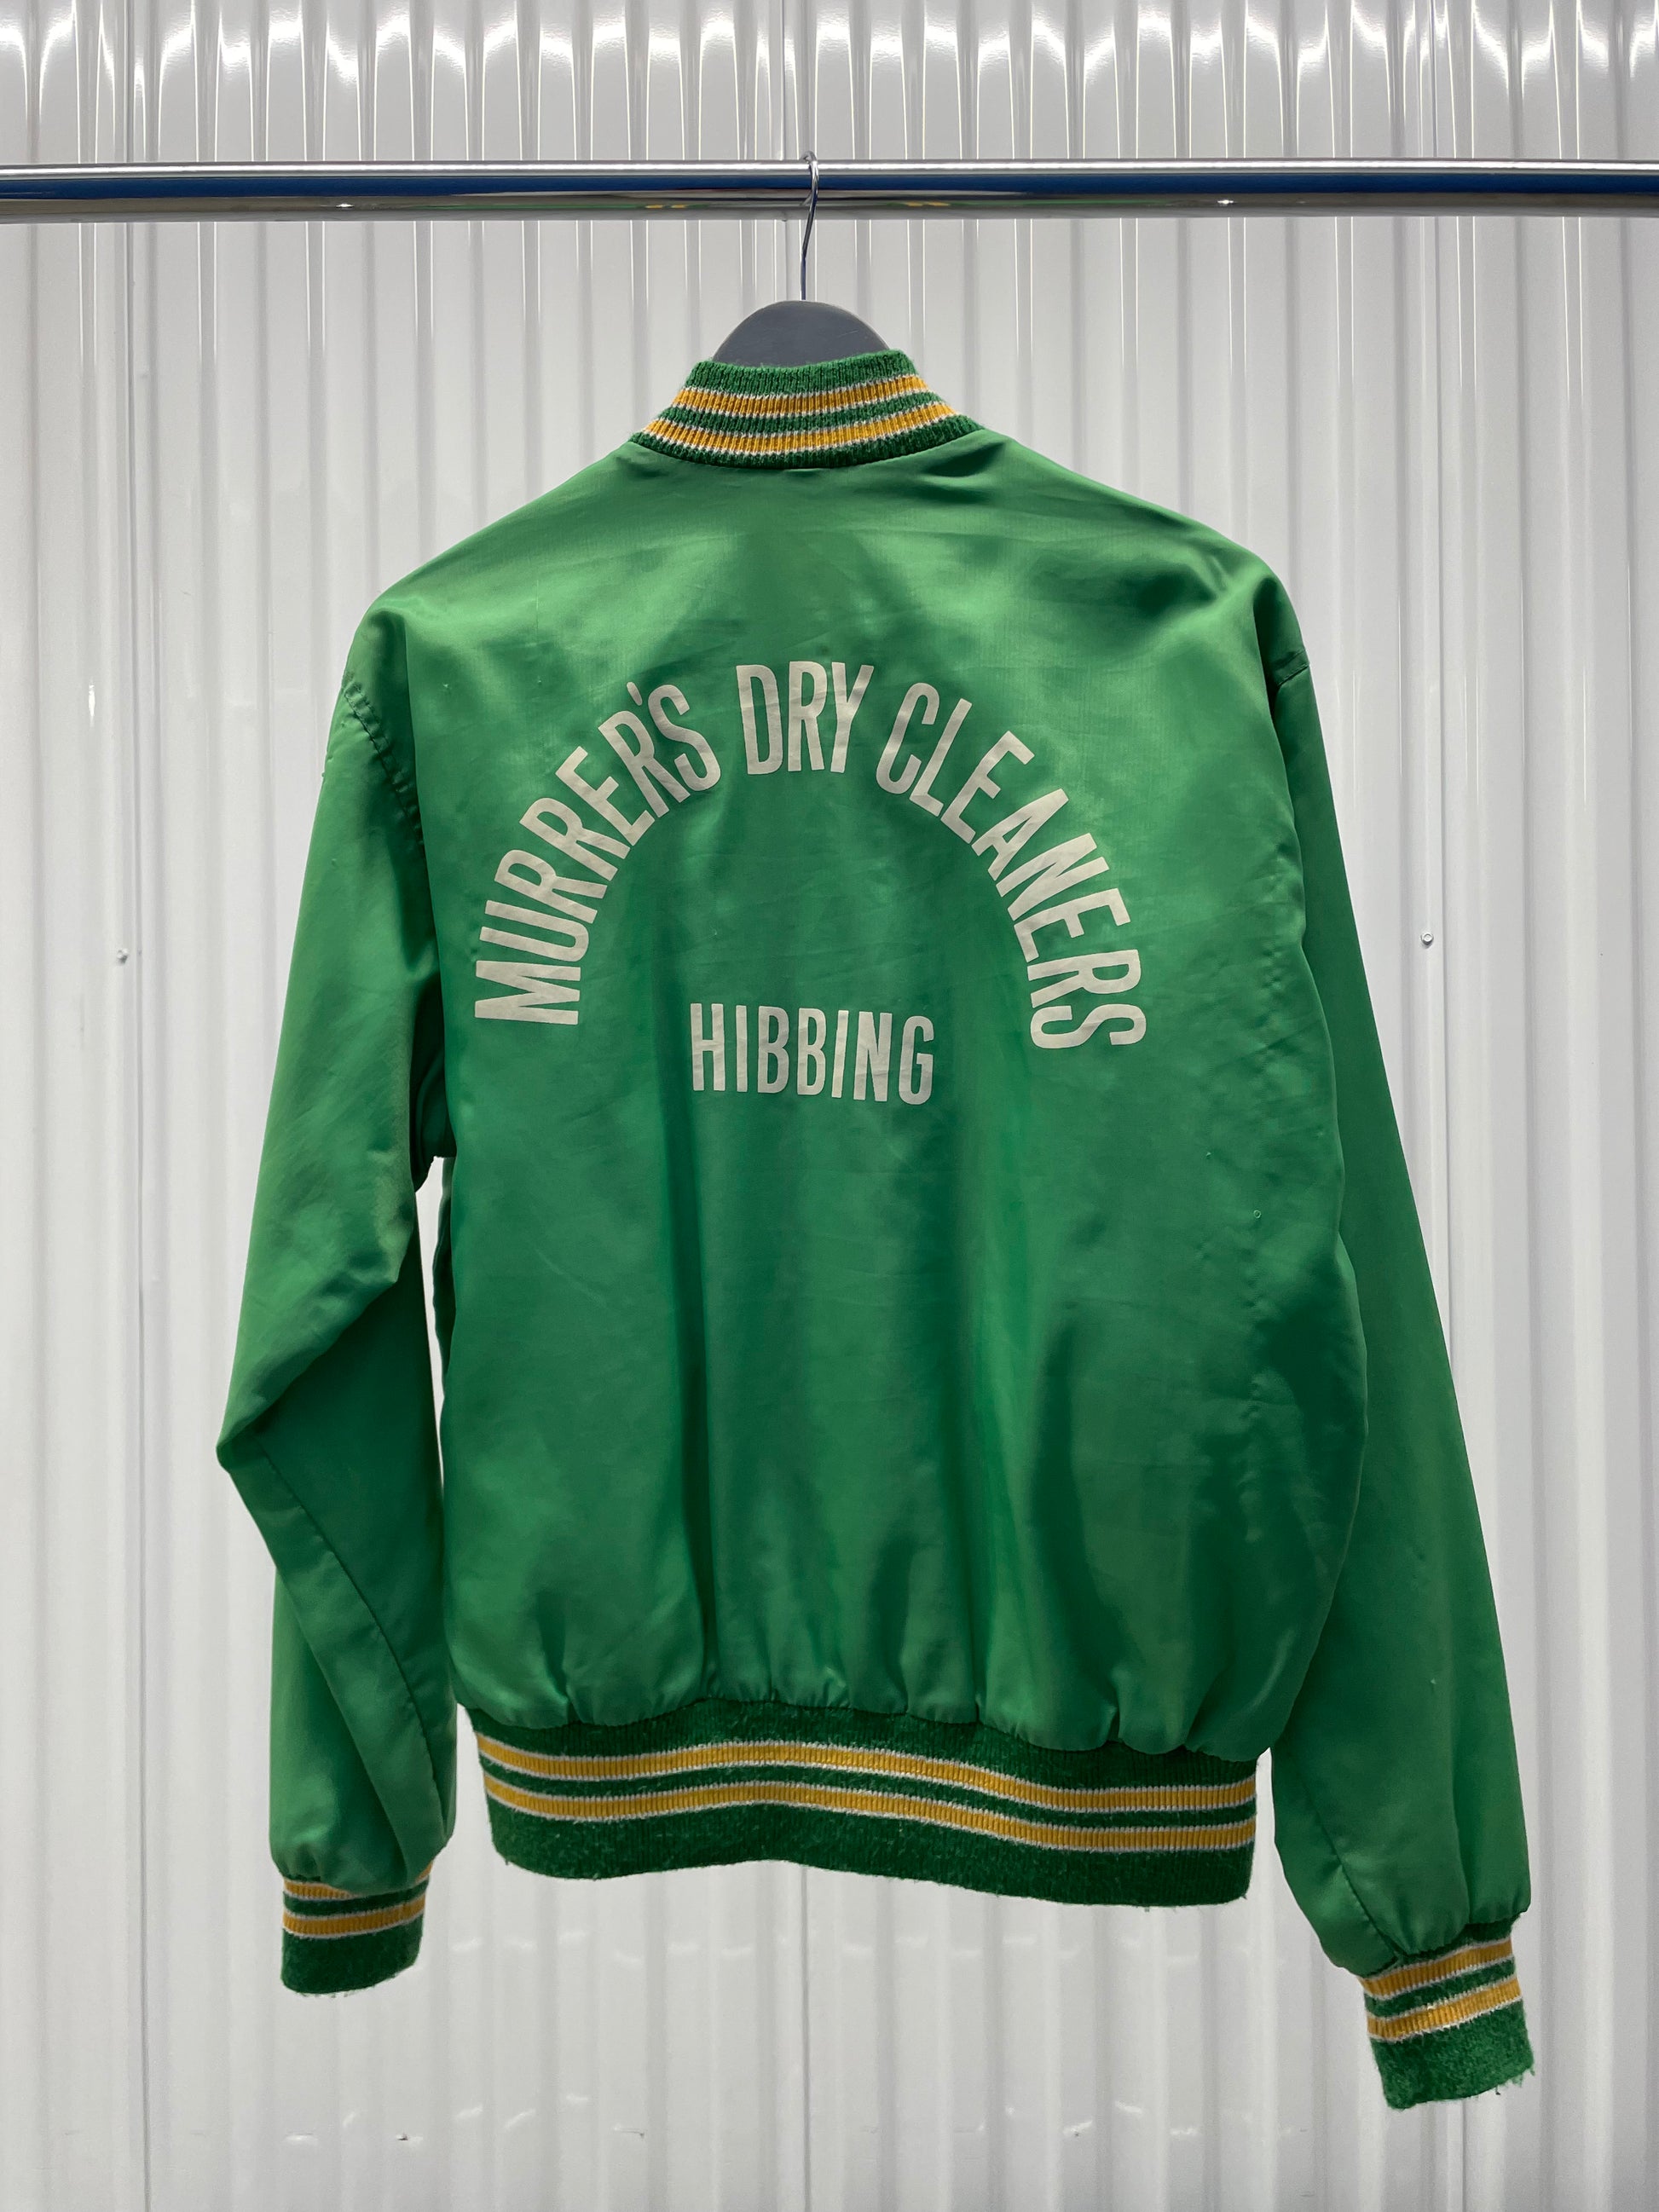 Vintage 70s Dry Cleaners Varsity Jacket - (M)